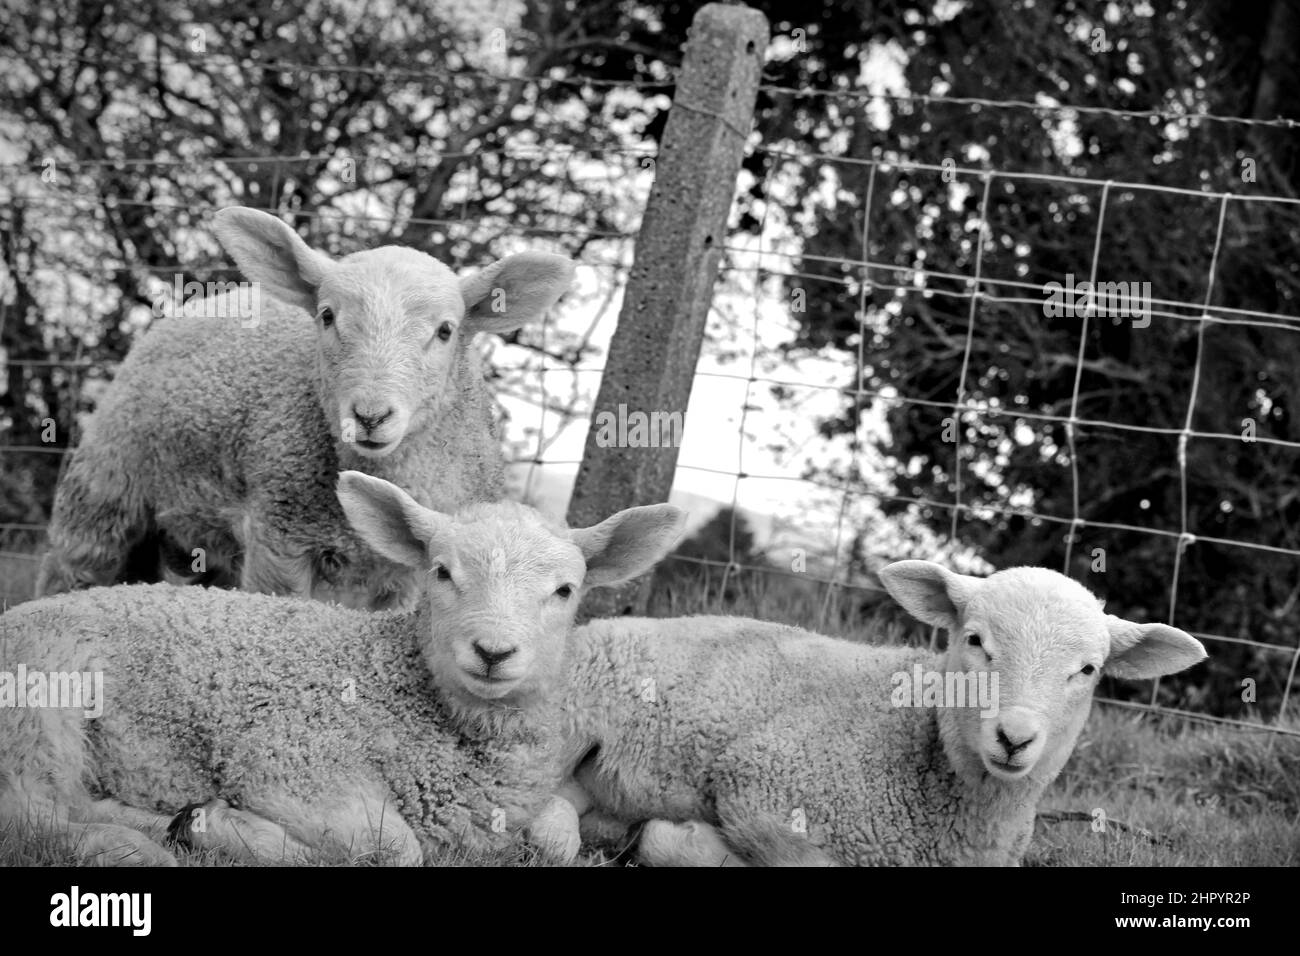 Three lambs looking at the camera Stock Photo